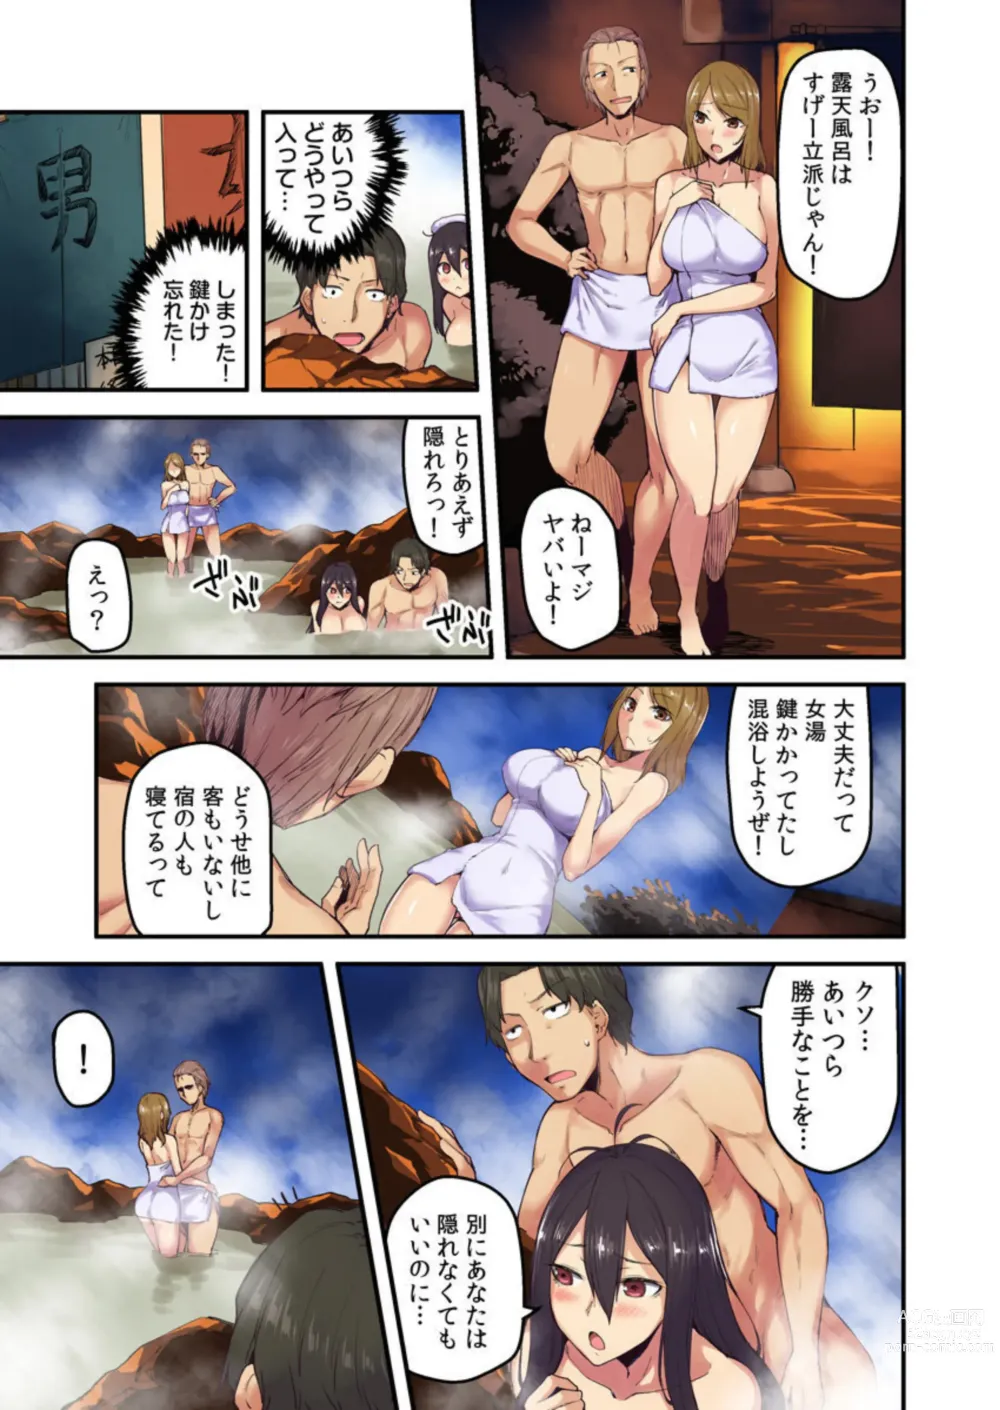 Page 9 of manga Ryokan ni Sumitsuku Oppai-chan ~Nigoriyu no Naka dashi Ecchi shite mo Barenai yo ne~ Vol. 2